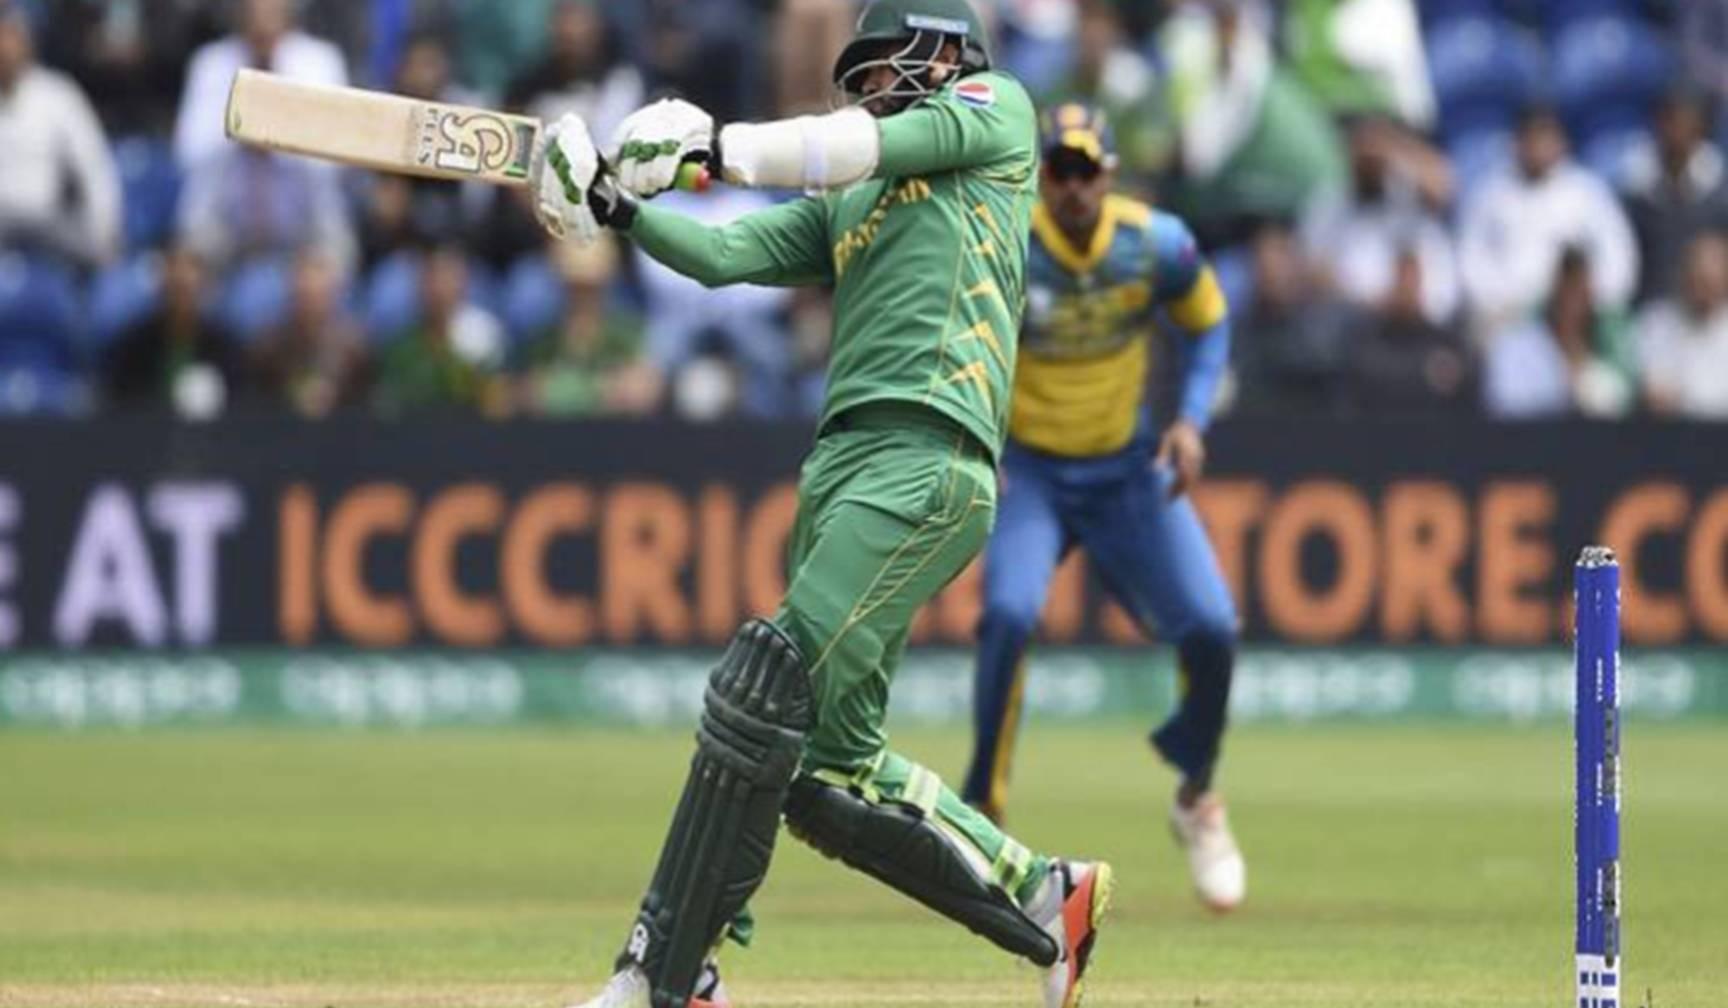 चैंपियंस ट्रॉफी :  सेमीफाइनल में पहुंचा पाकिस्तान, श्रीलंका को 3 विकेट से दी शिकस्त